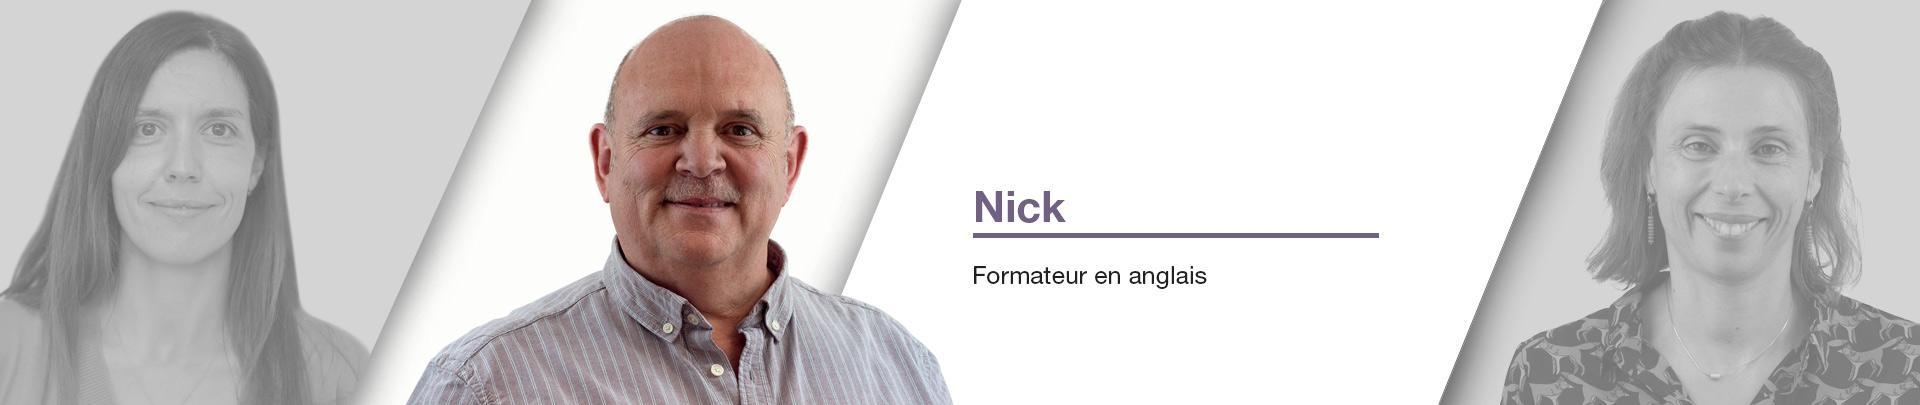 Nick  - Formateur en anglais